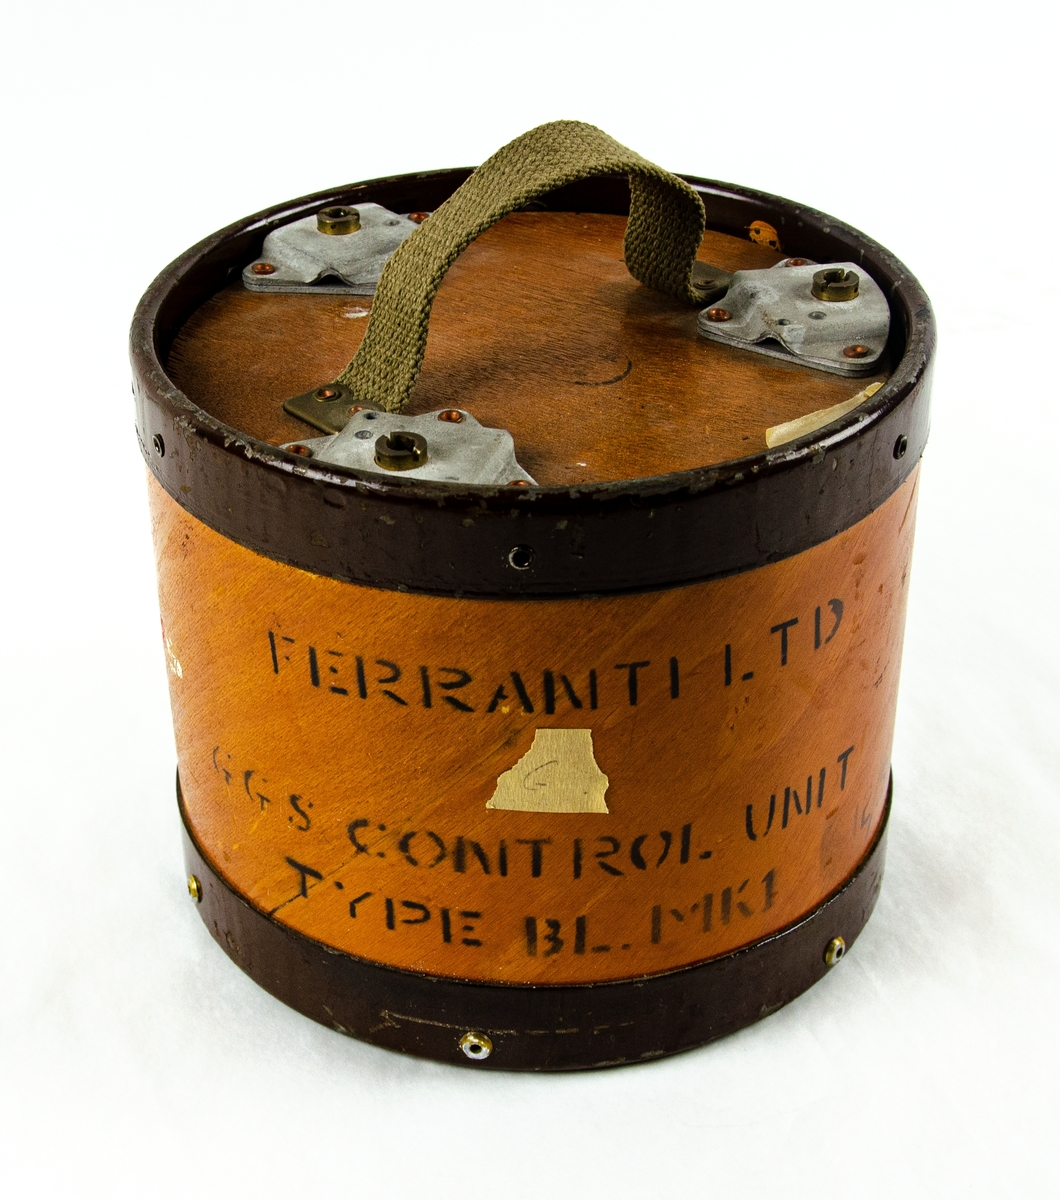 Bankorrektör, "CONTROL UNIT TYPE 8 B.L. MK1. FERRANTI LTD", är märkt på föremålet. Svart rektangulär låda av plåt med ett kontaktuttag. Förvarad i en rundad originallåda av trä med förpackningsmaterial av Ferranti LTD.